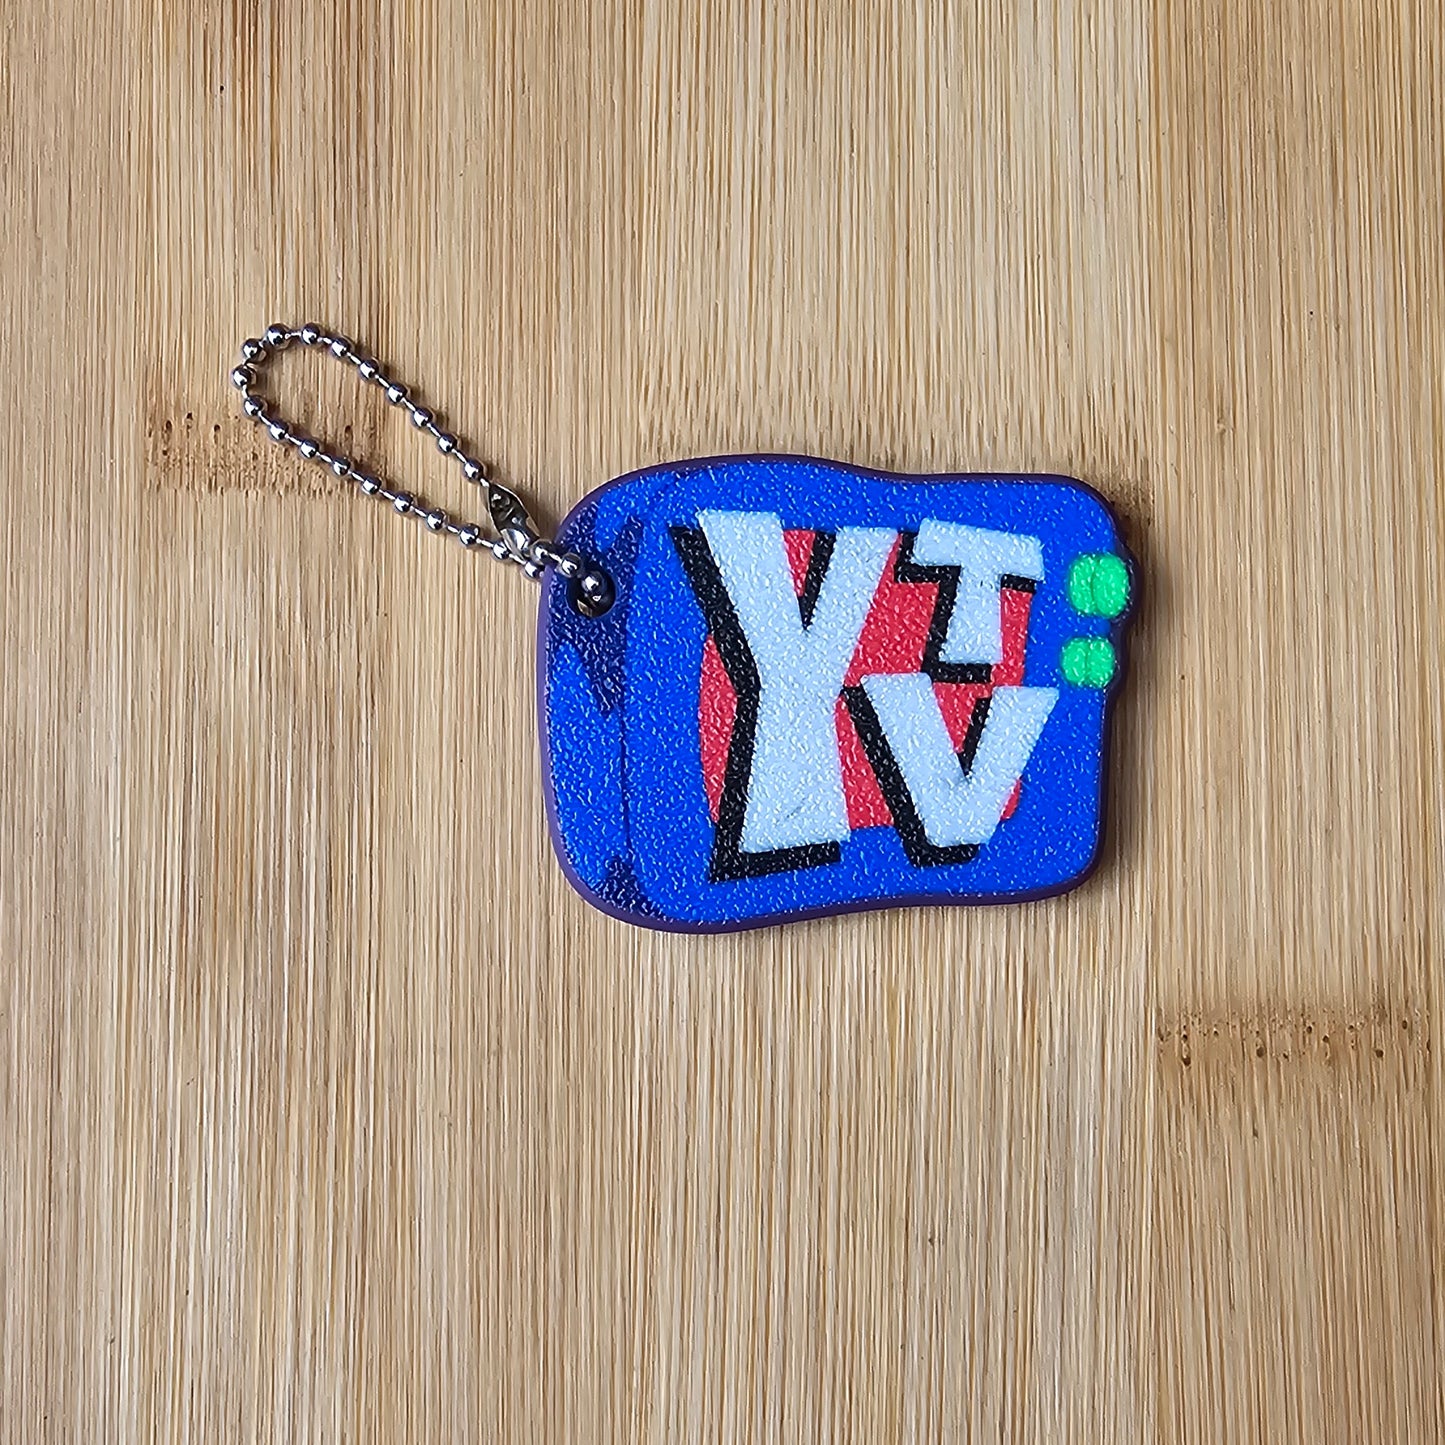 YTV Retro TV Logo Keychain